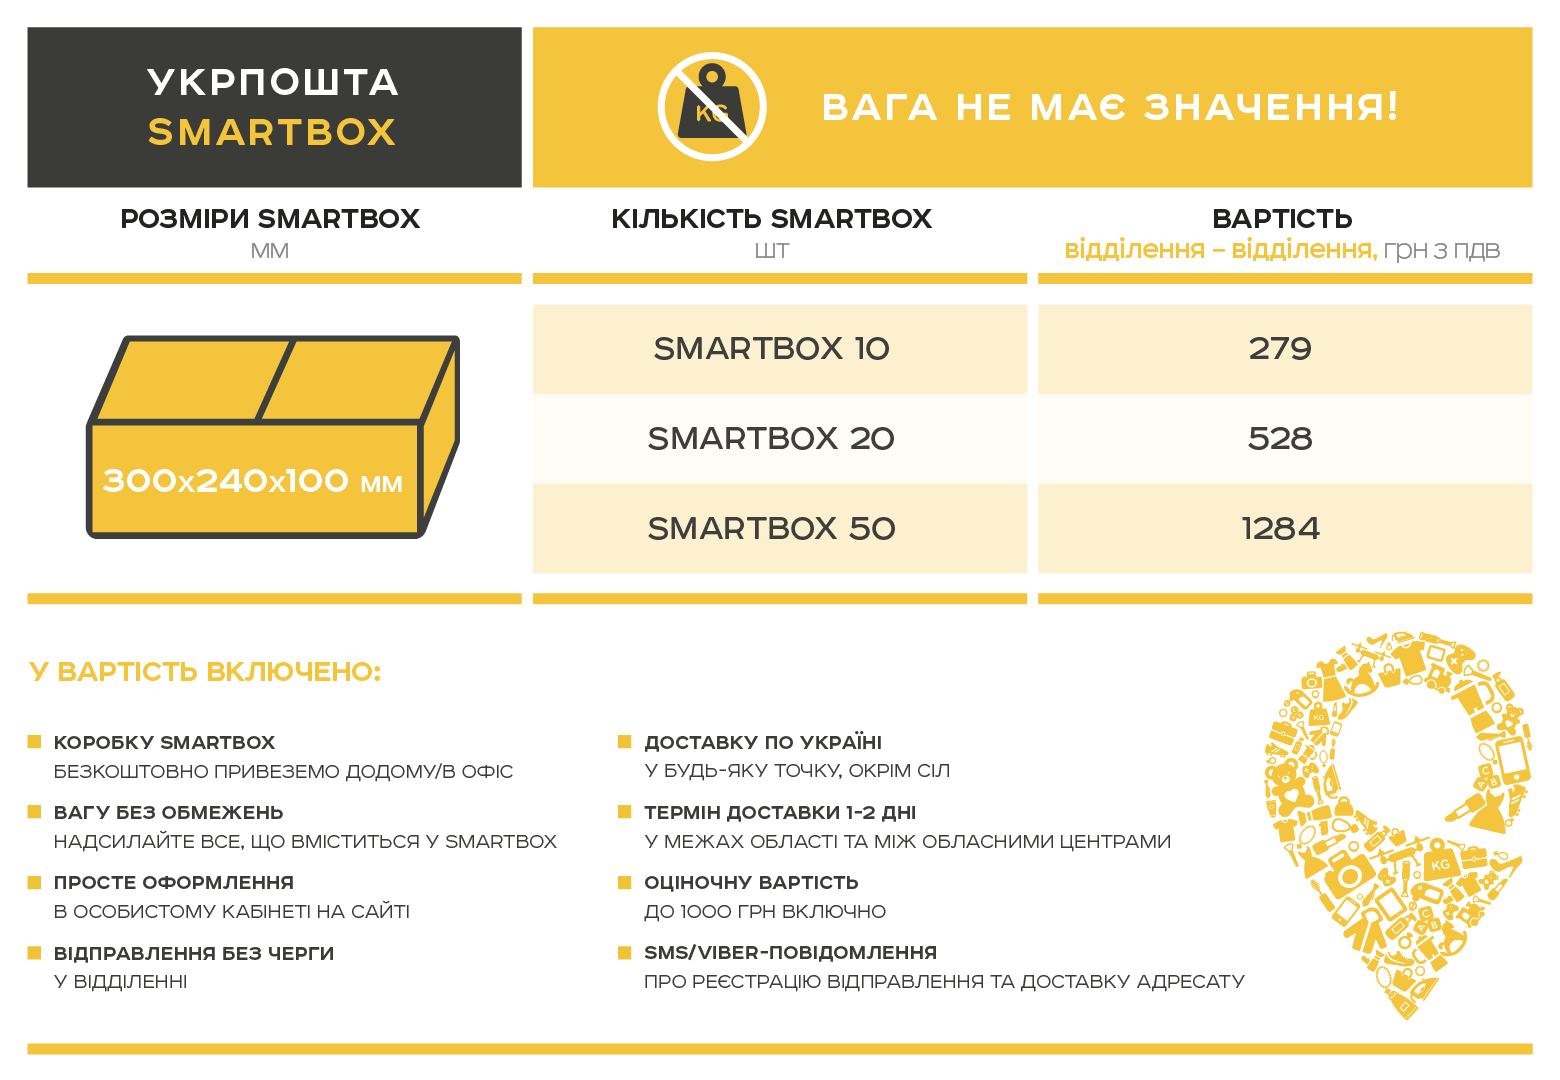 ukrposhta-smatbox-for-e-commerce-prices.jpg